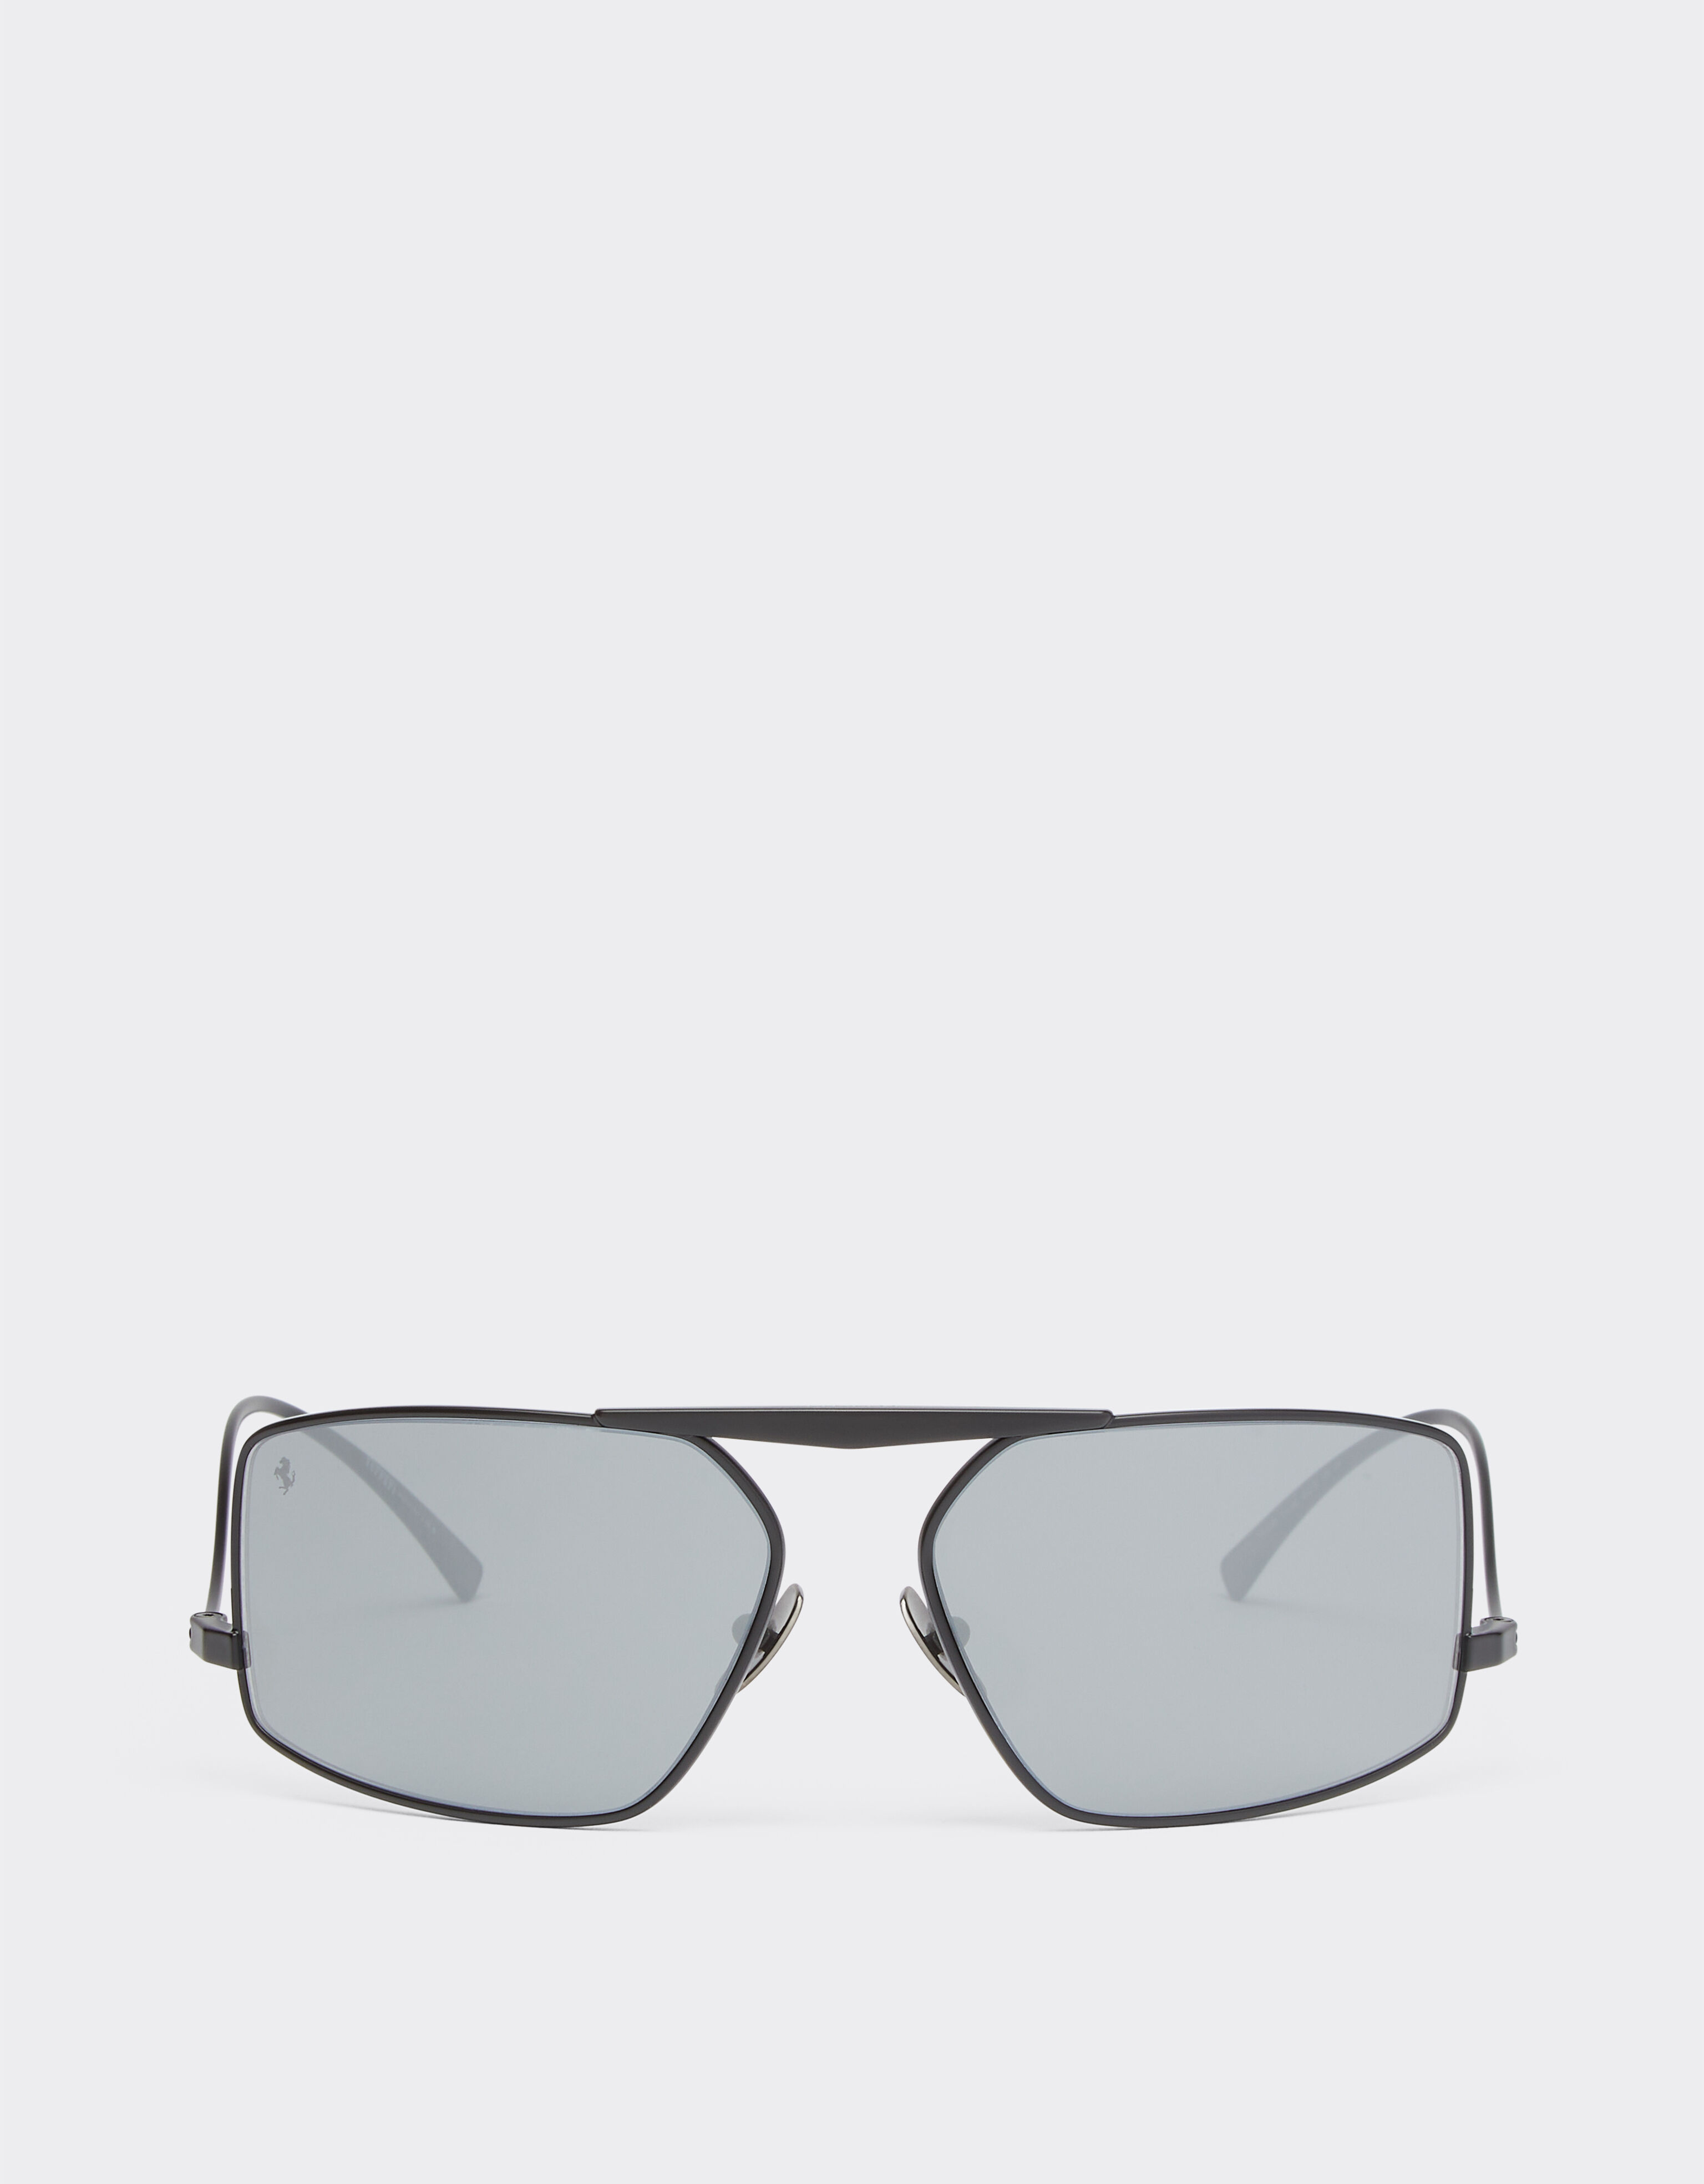 Ferrari Ferrari Sonnenbrille aus schwarzem Metall mit silberfarben verspiegelten Gläsern Mattschwarz F1250f